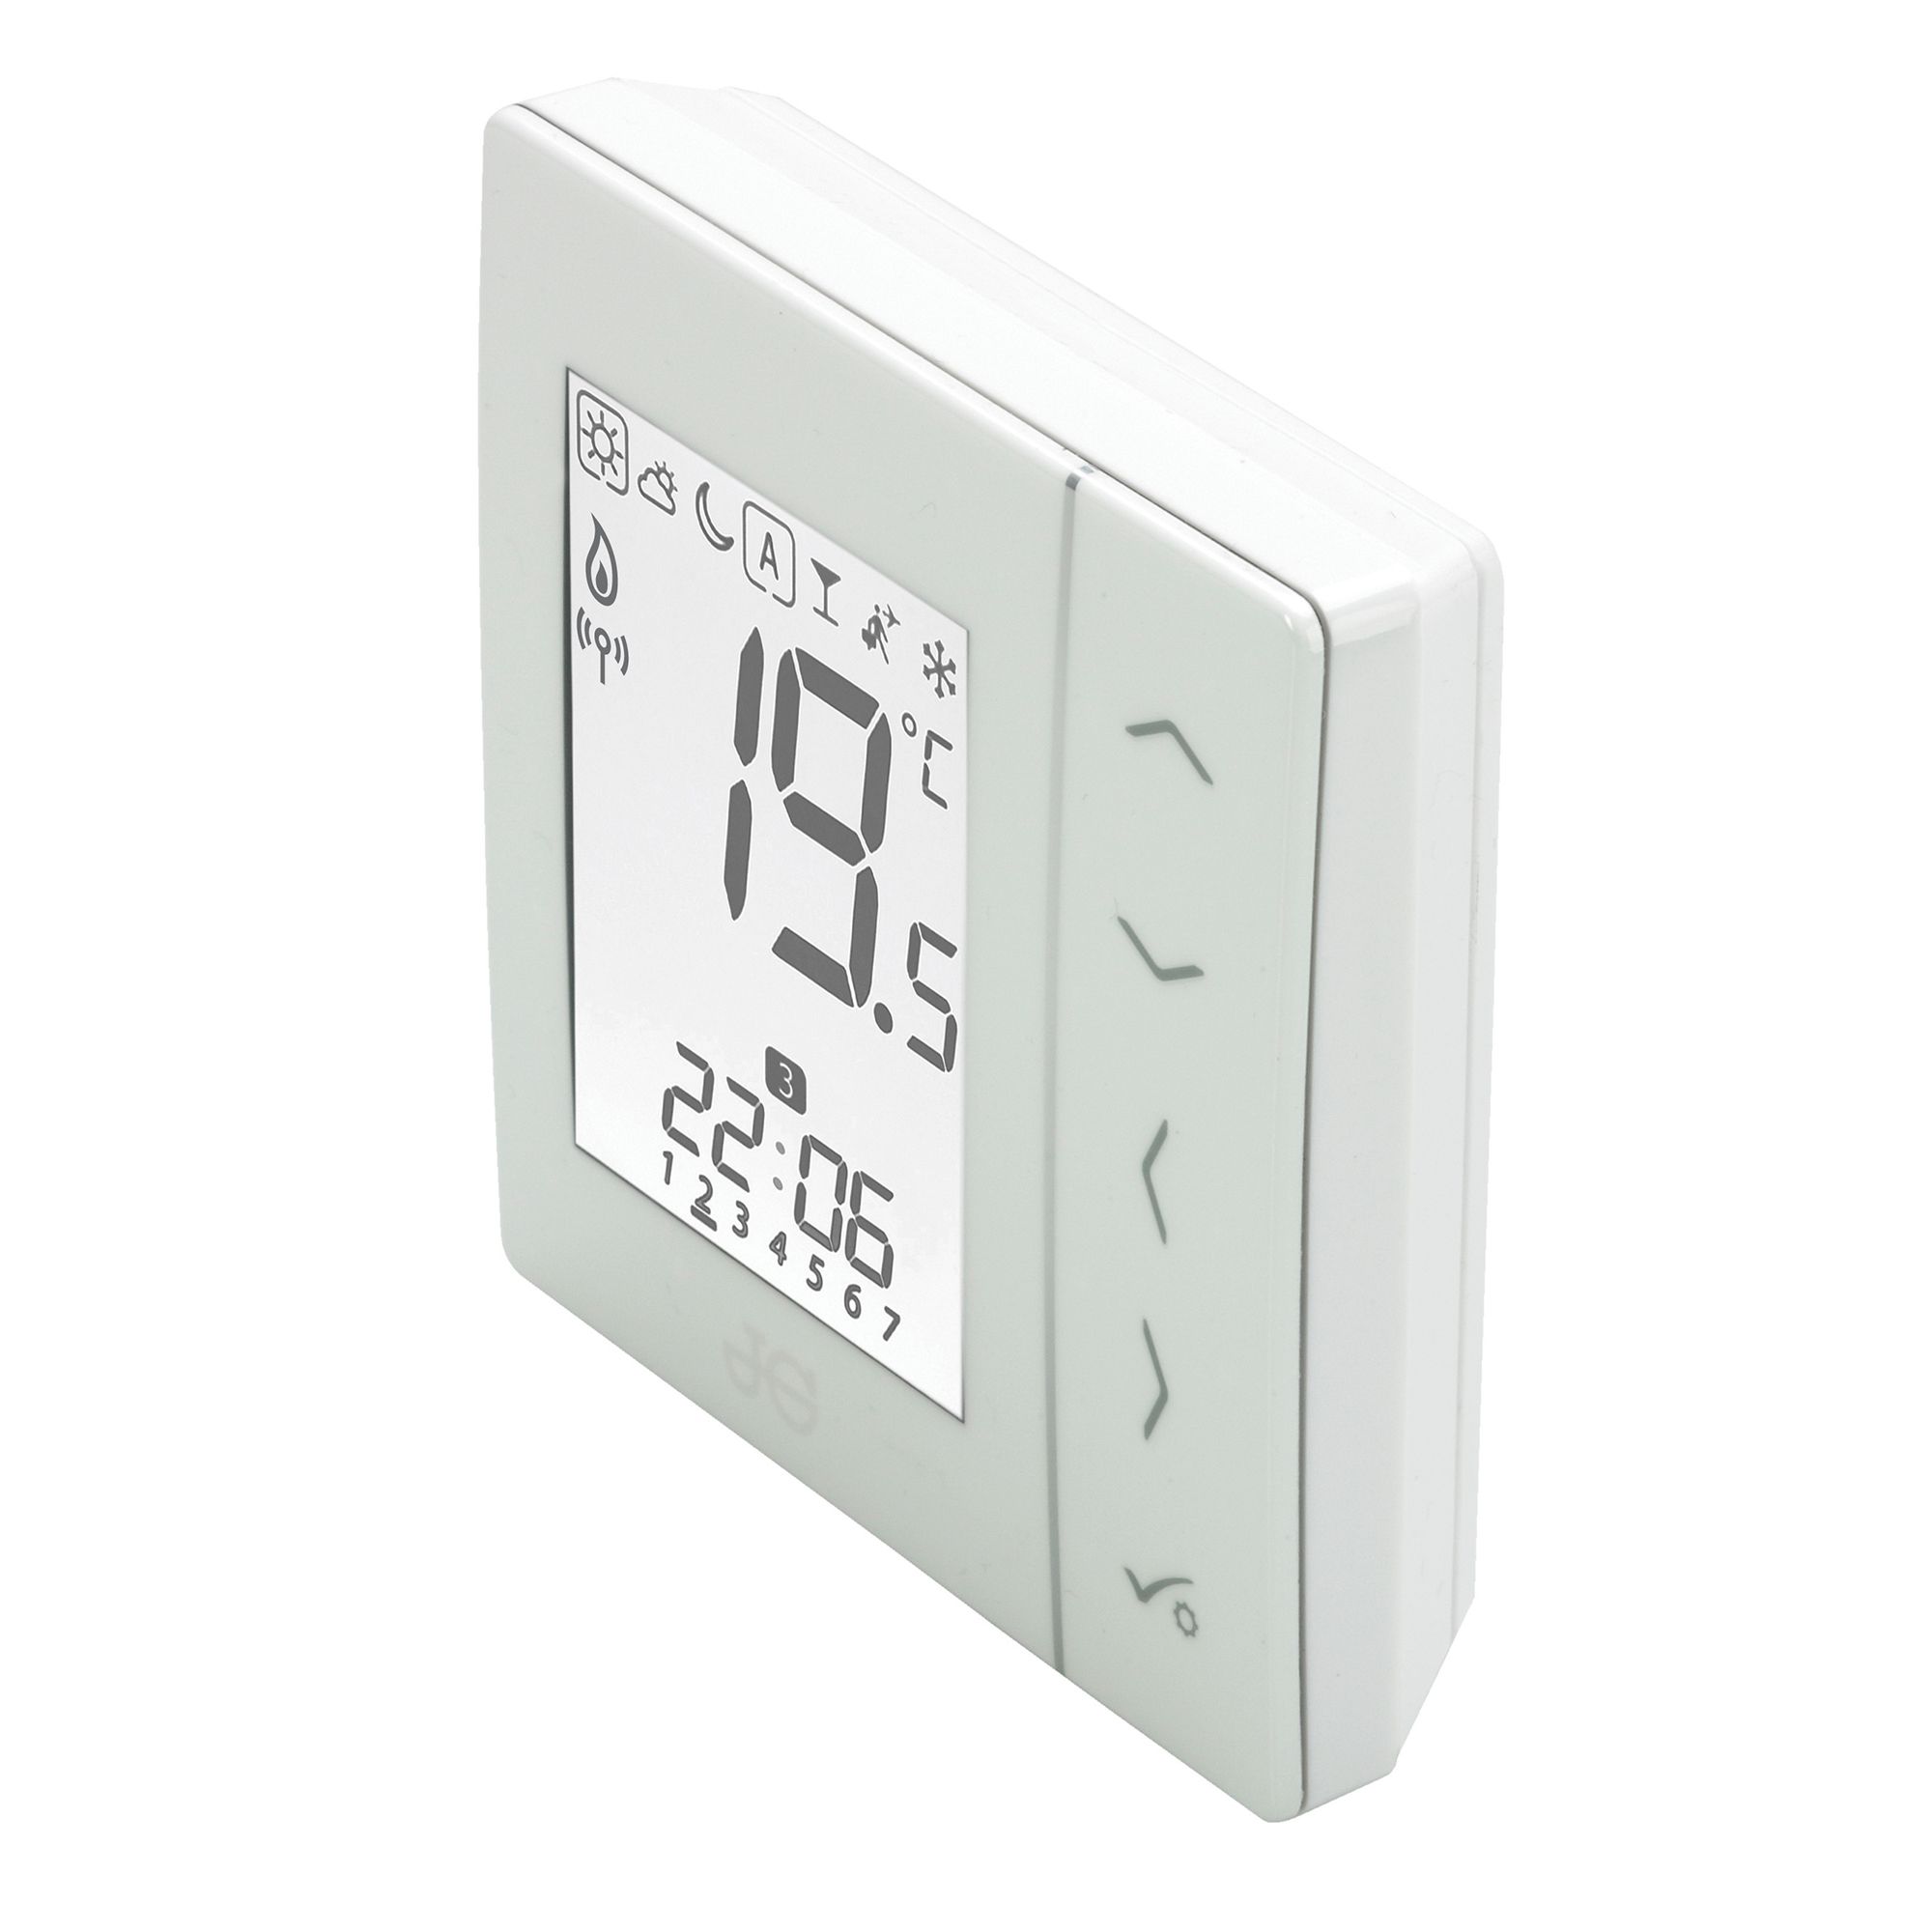 JG Aura Room thermostat